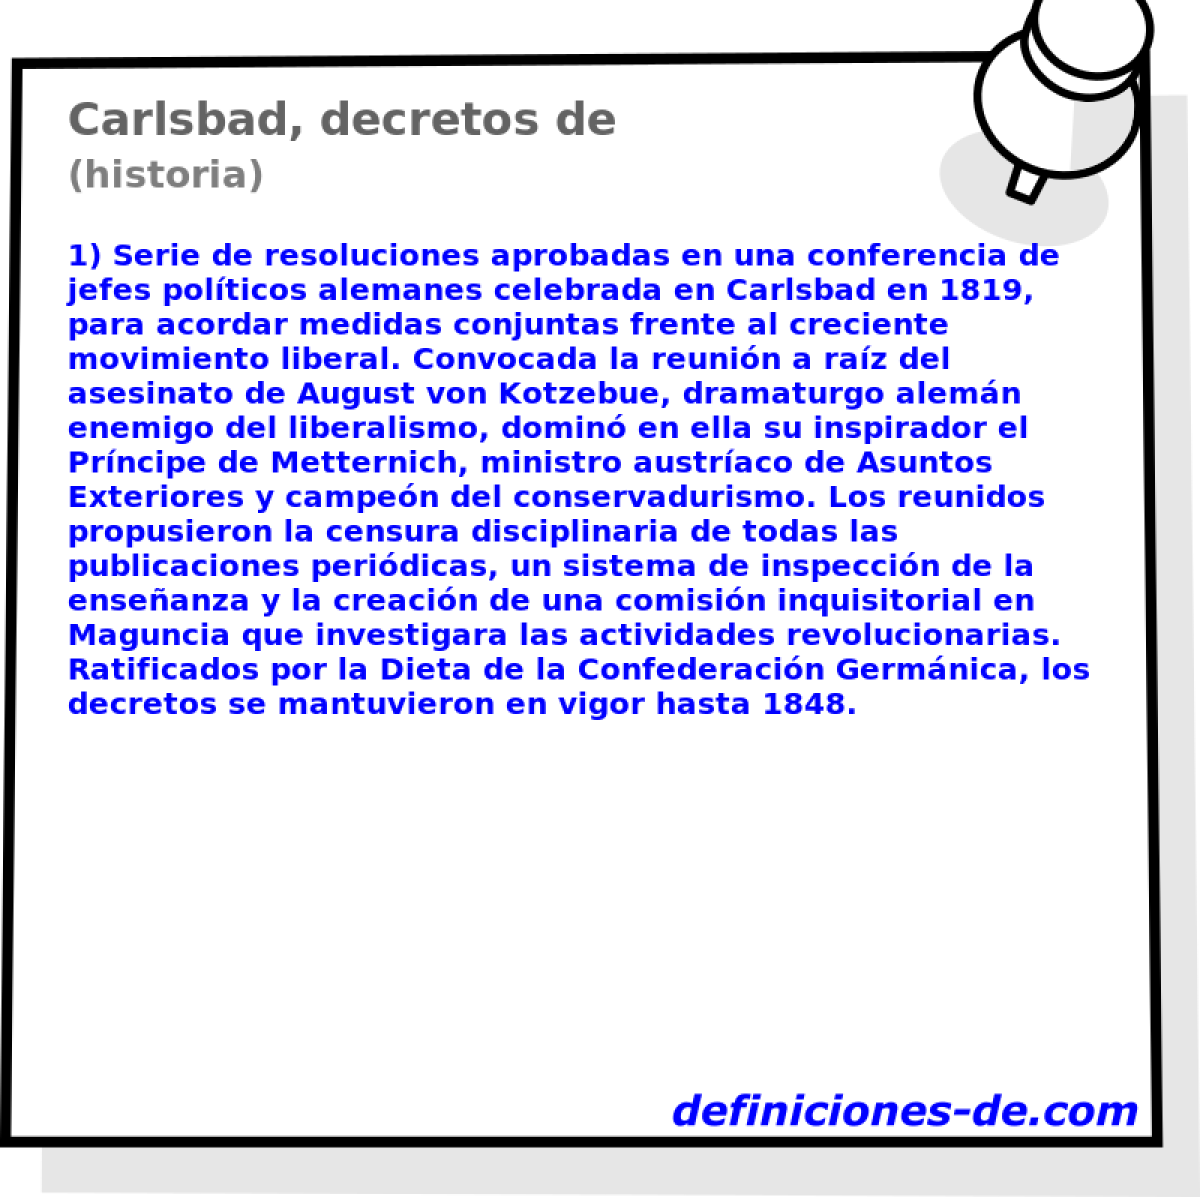 Carlsbad, decretos de (historia)